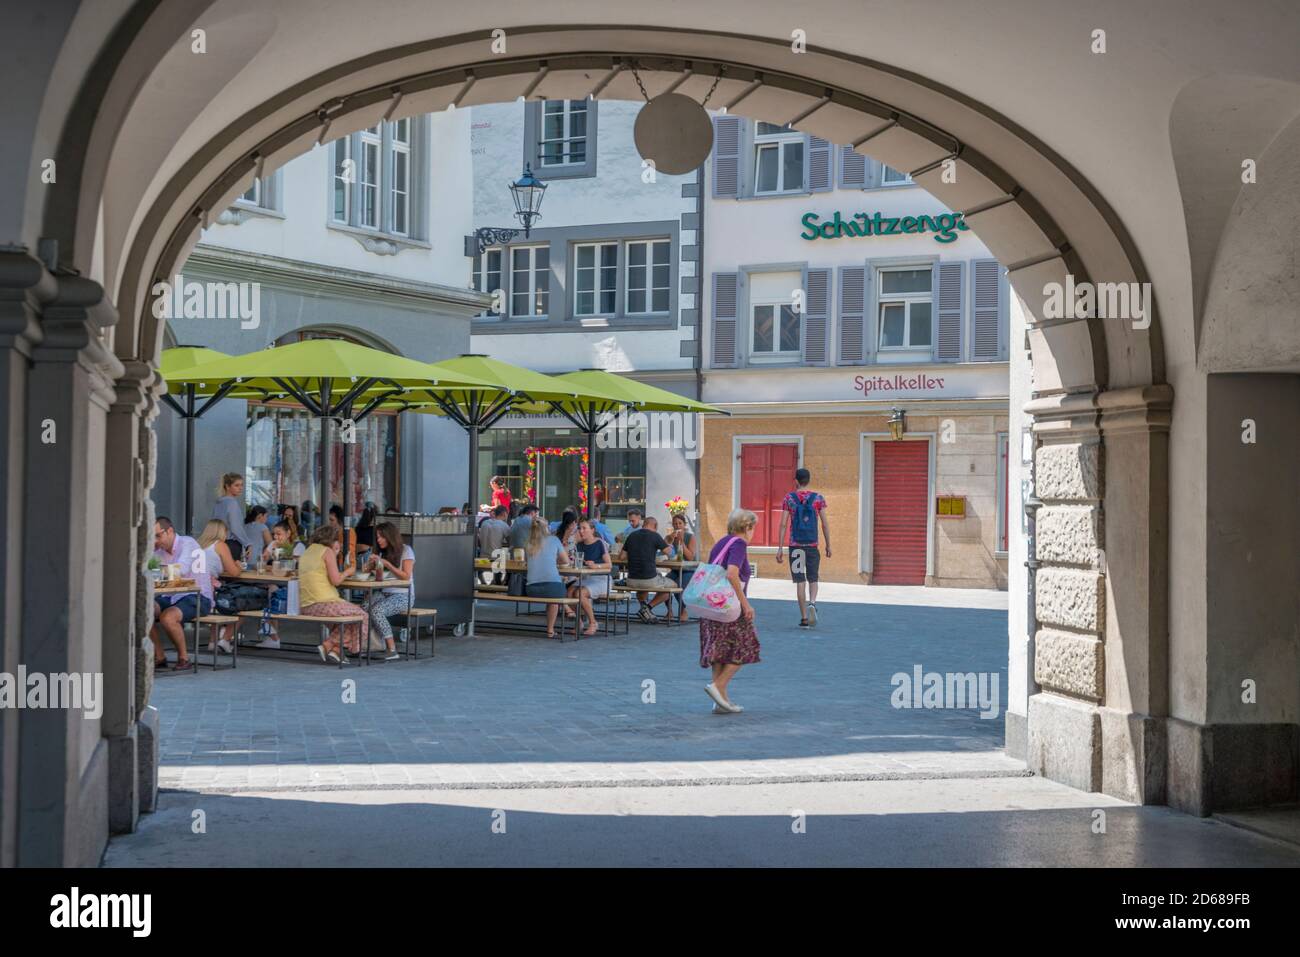 Door of Old town of St. Gallen, Switzerland Stock Photo